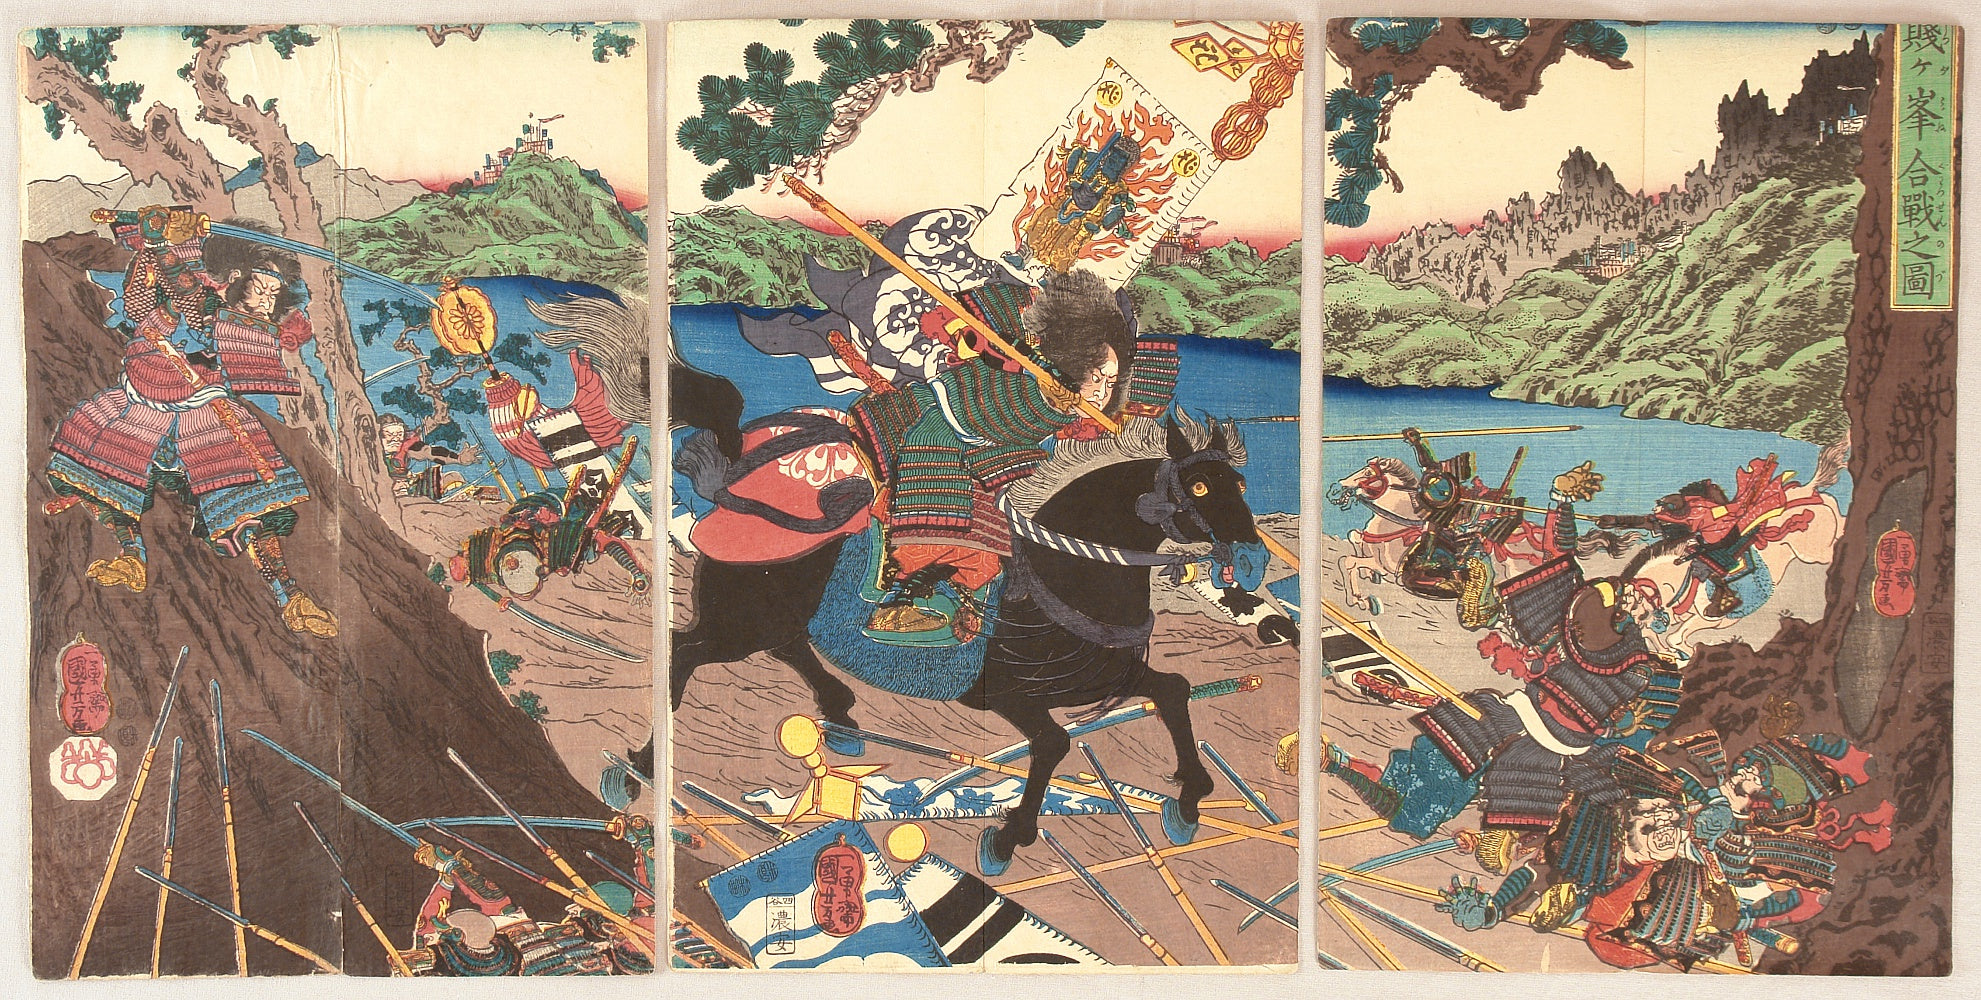 豊臣秀吉、16世紀の日本統一者